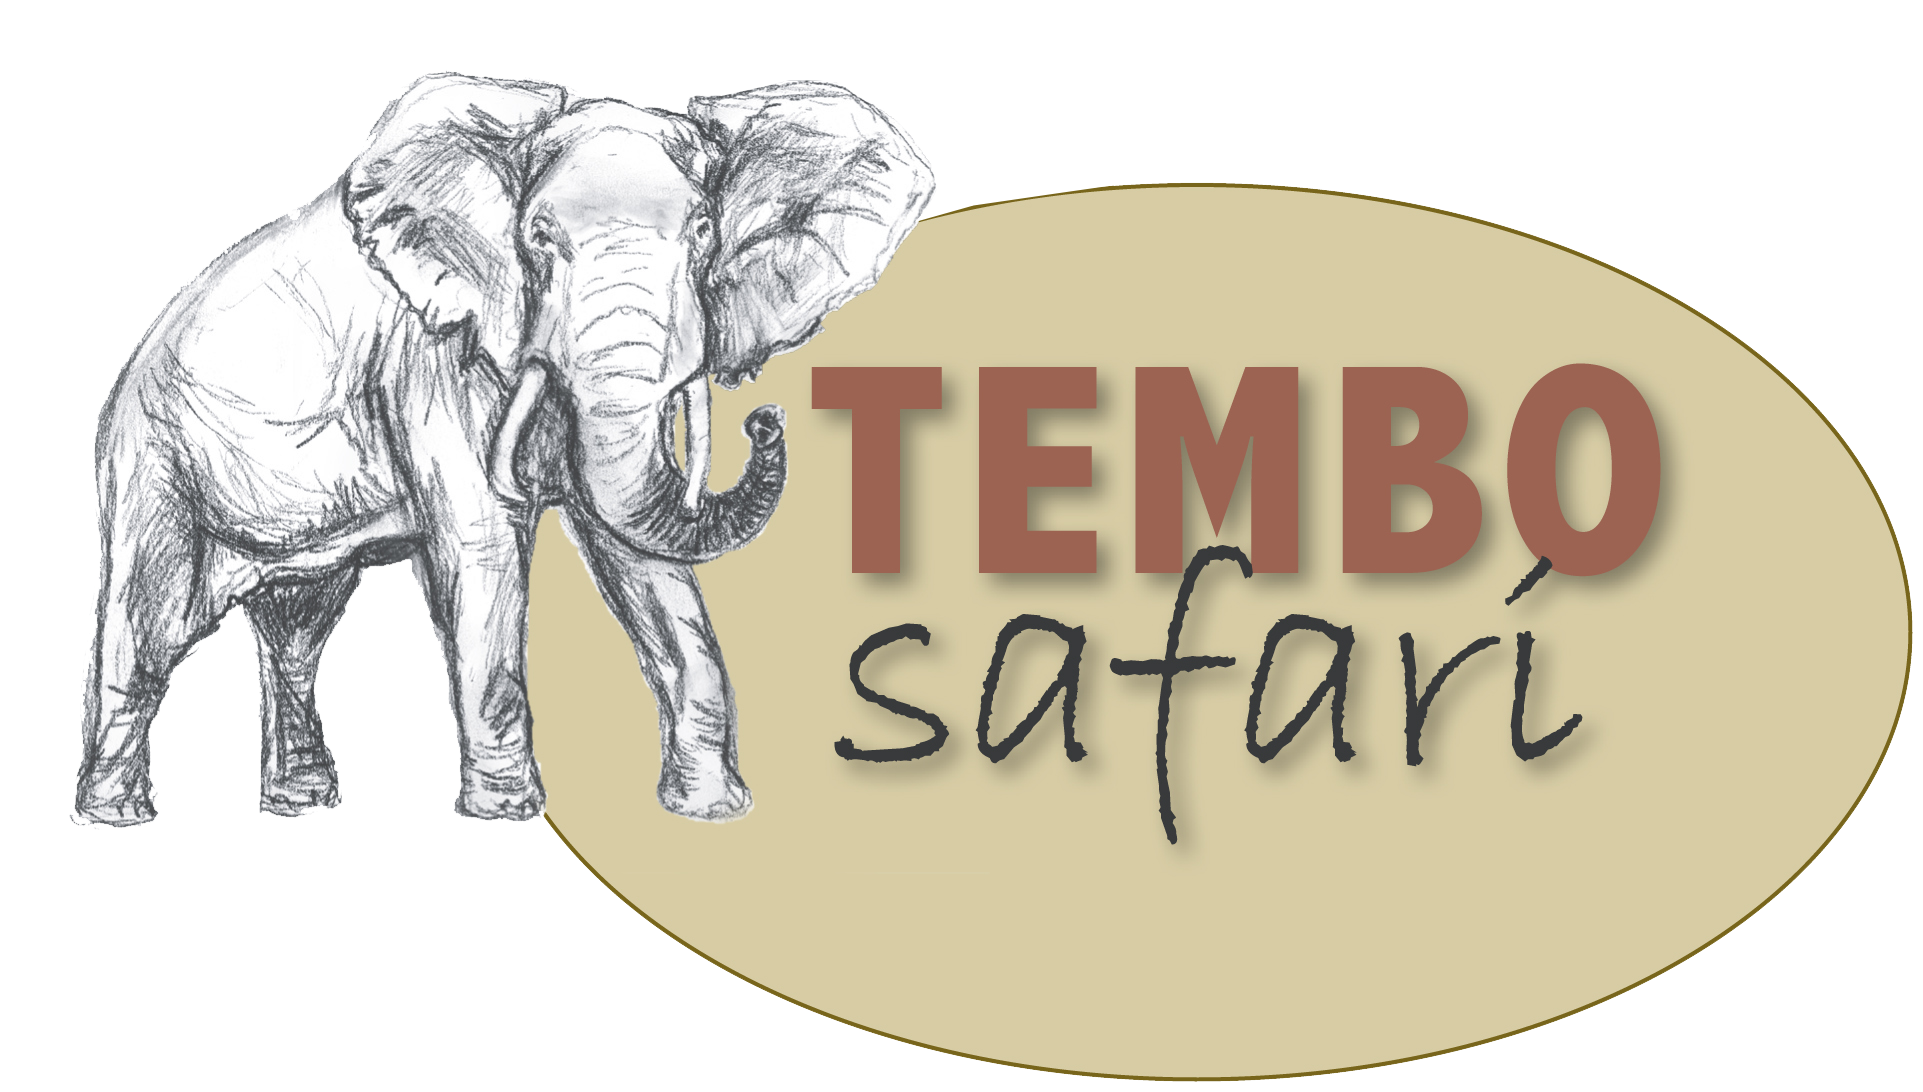 Tembo safari